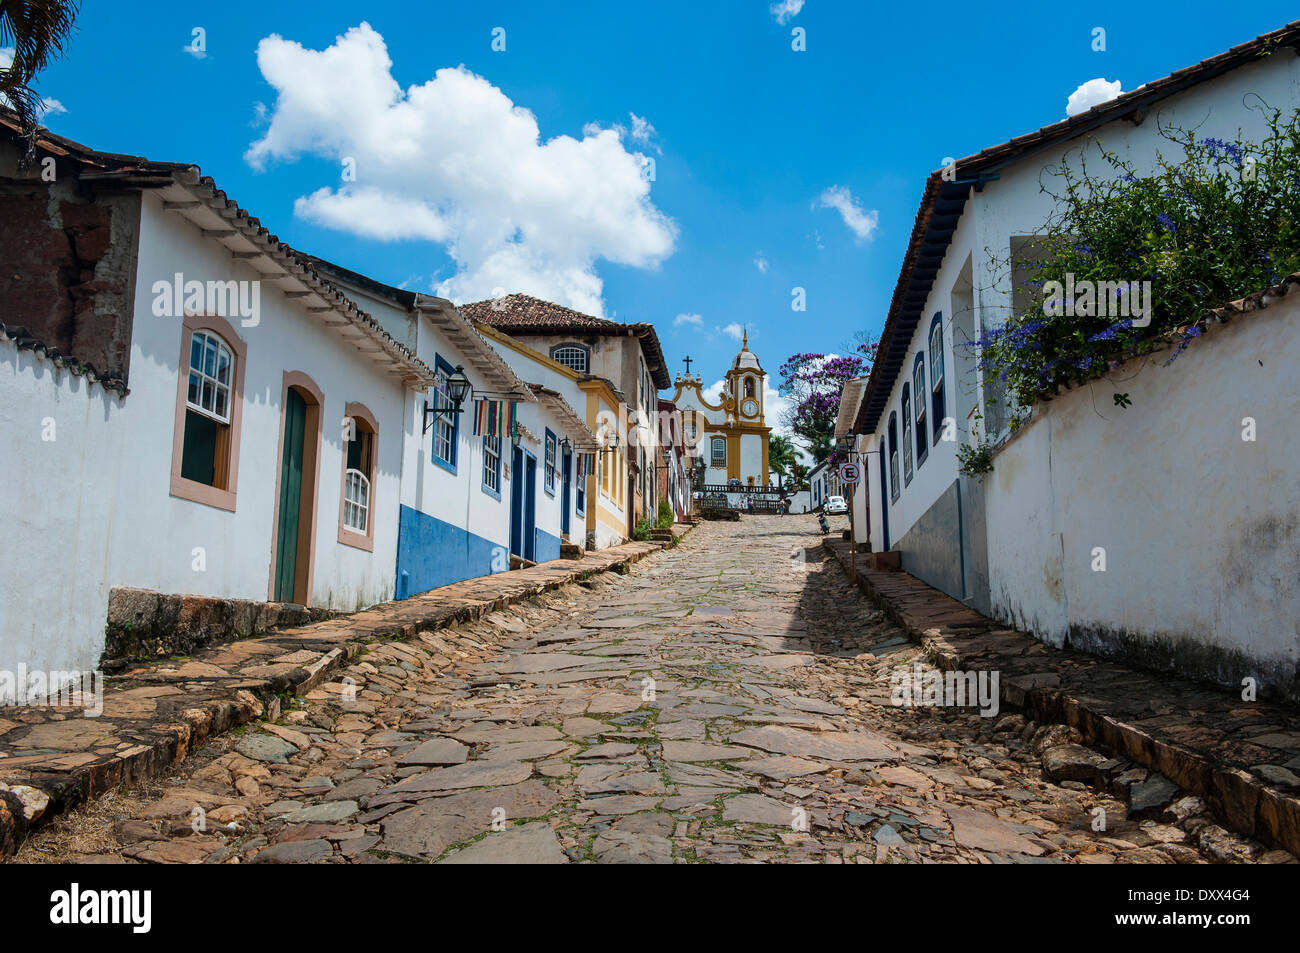 Histórica ciudad minera de Tiradentes, Minas Gerais, Brasil Foto de stock